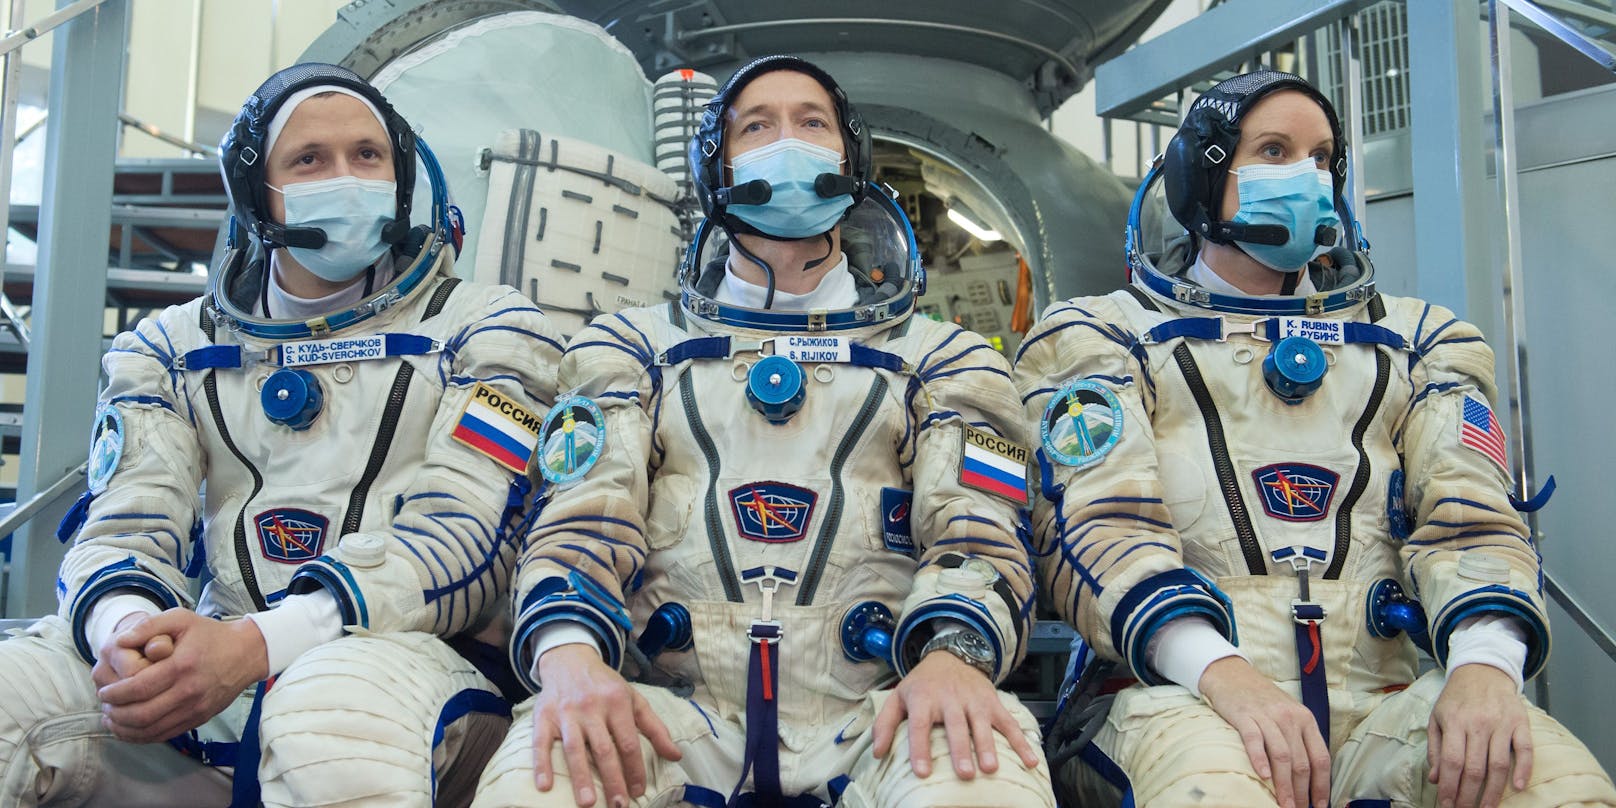 Russlands Astronauten auf dem Weg zur ISS Raumstation